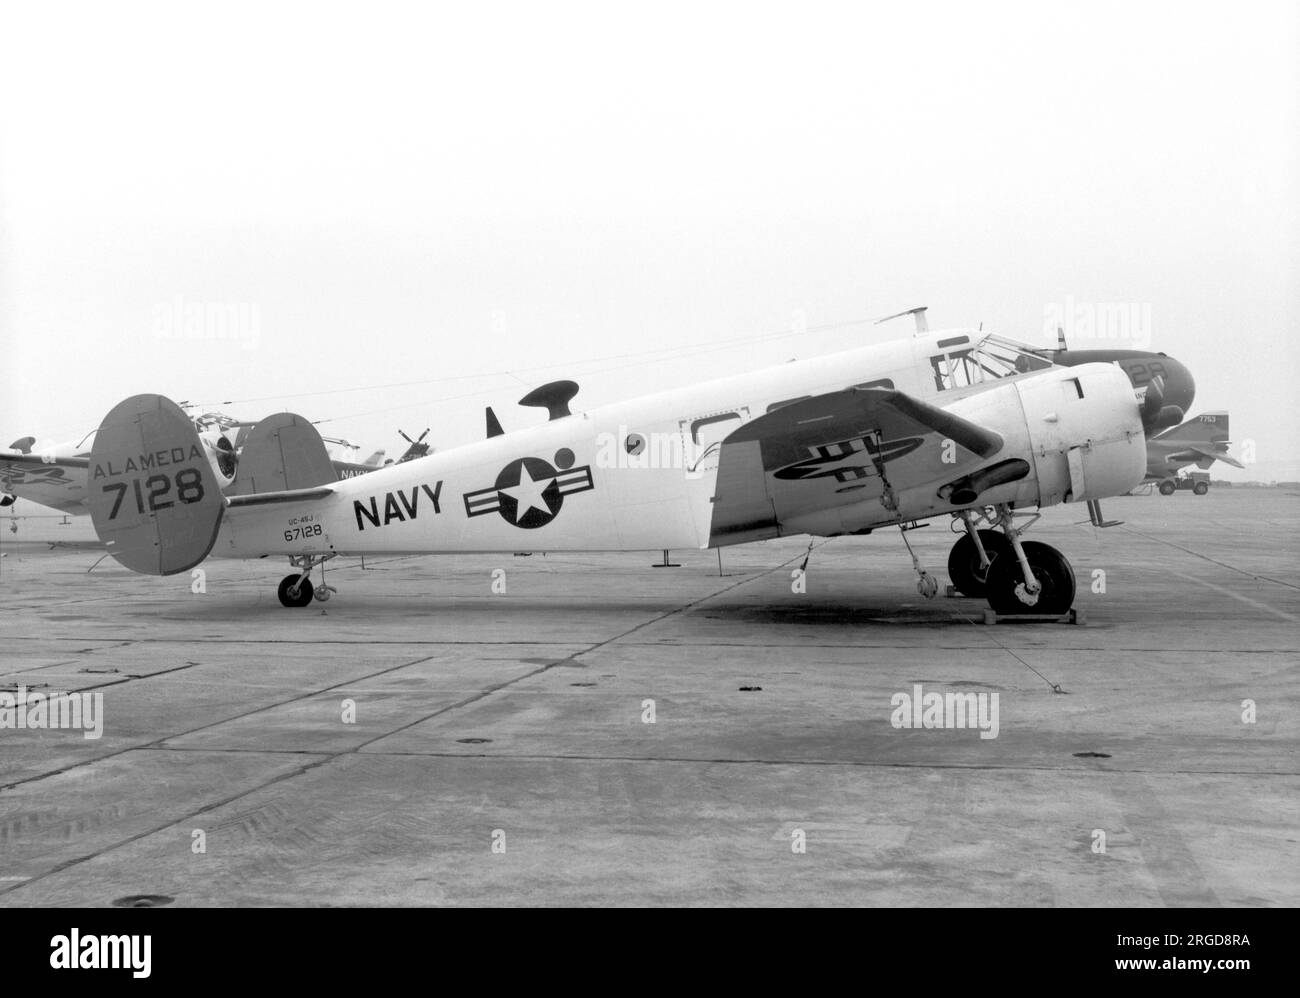 United States Navy - Beechcraft UC-45J 67128 (msn n-934), al NAS Alameda il 4 novembre 1967. (Ex USAAF AT-7 41-21106 (MSN 1121) trasferito alla US Navy nel 1946. Rigenerato da Beech come JRB-5 (MSN N-309) febbraio 1949. Rigenerato da Beech come SNB-5 (MSN N-934) Giu 1952). Foto Stock